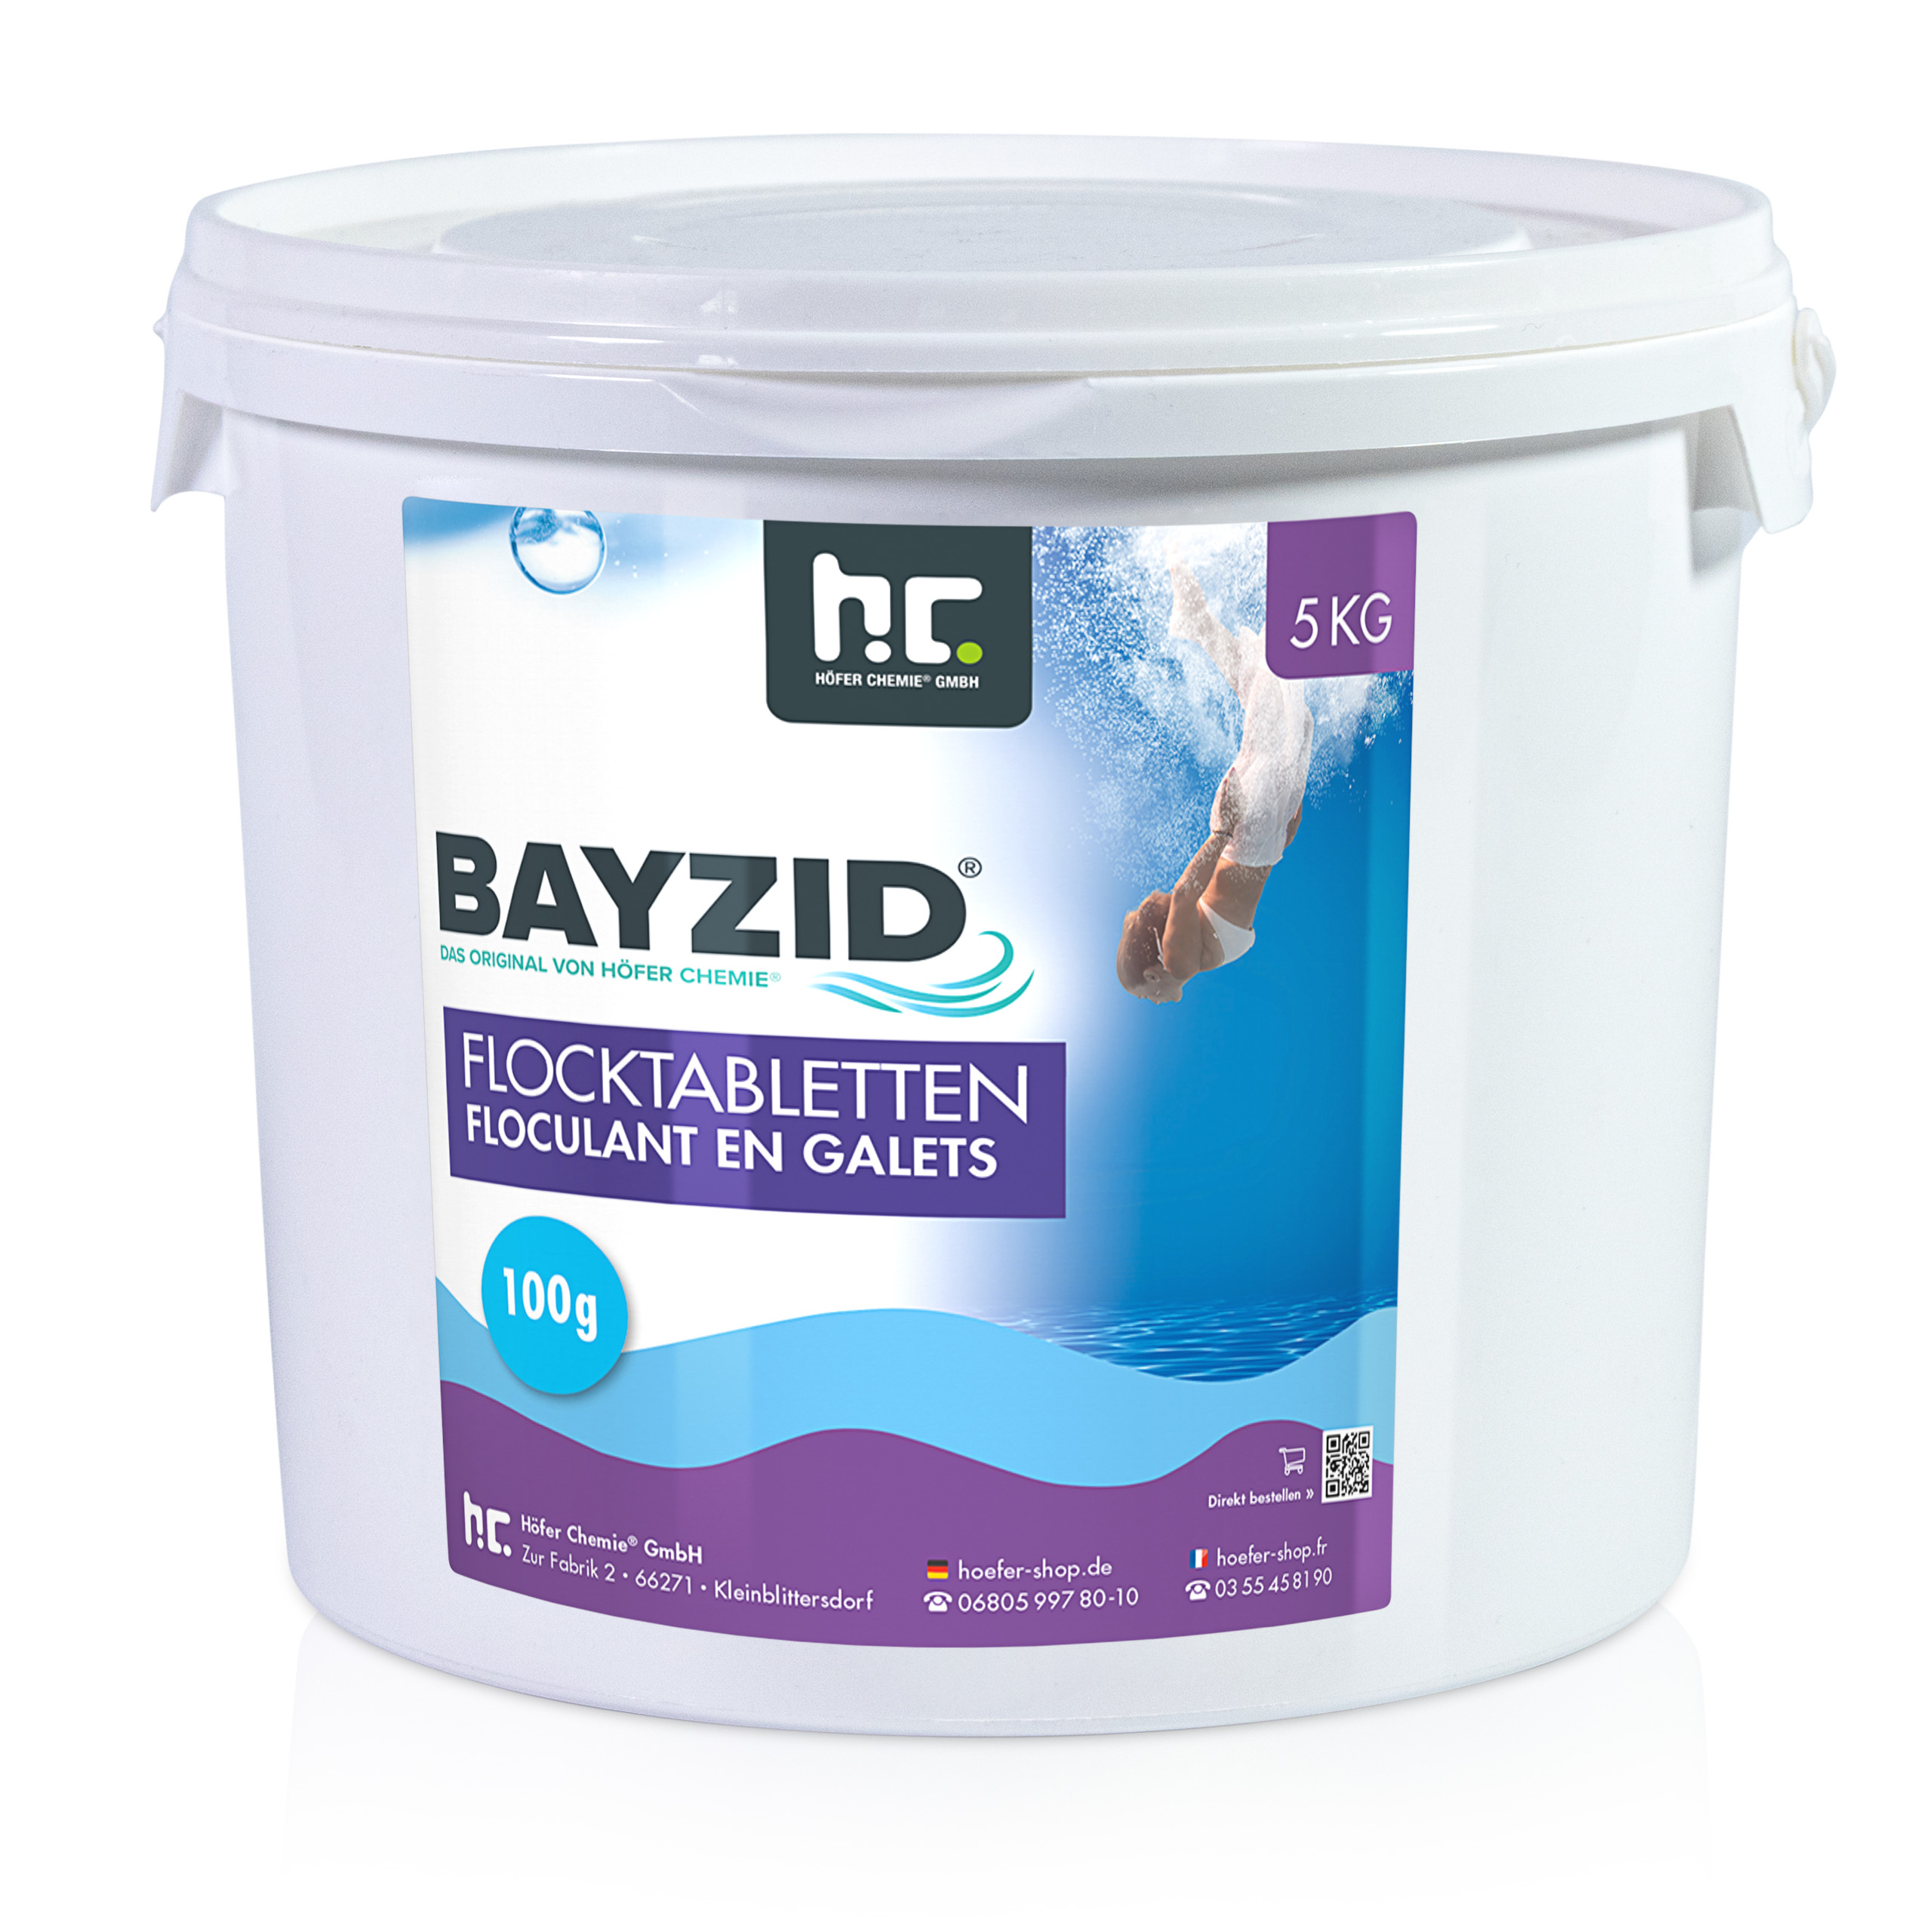 5 Kg Bayzid® Floculant en galets (100g)